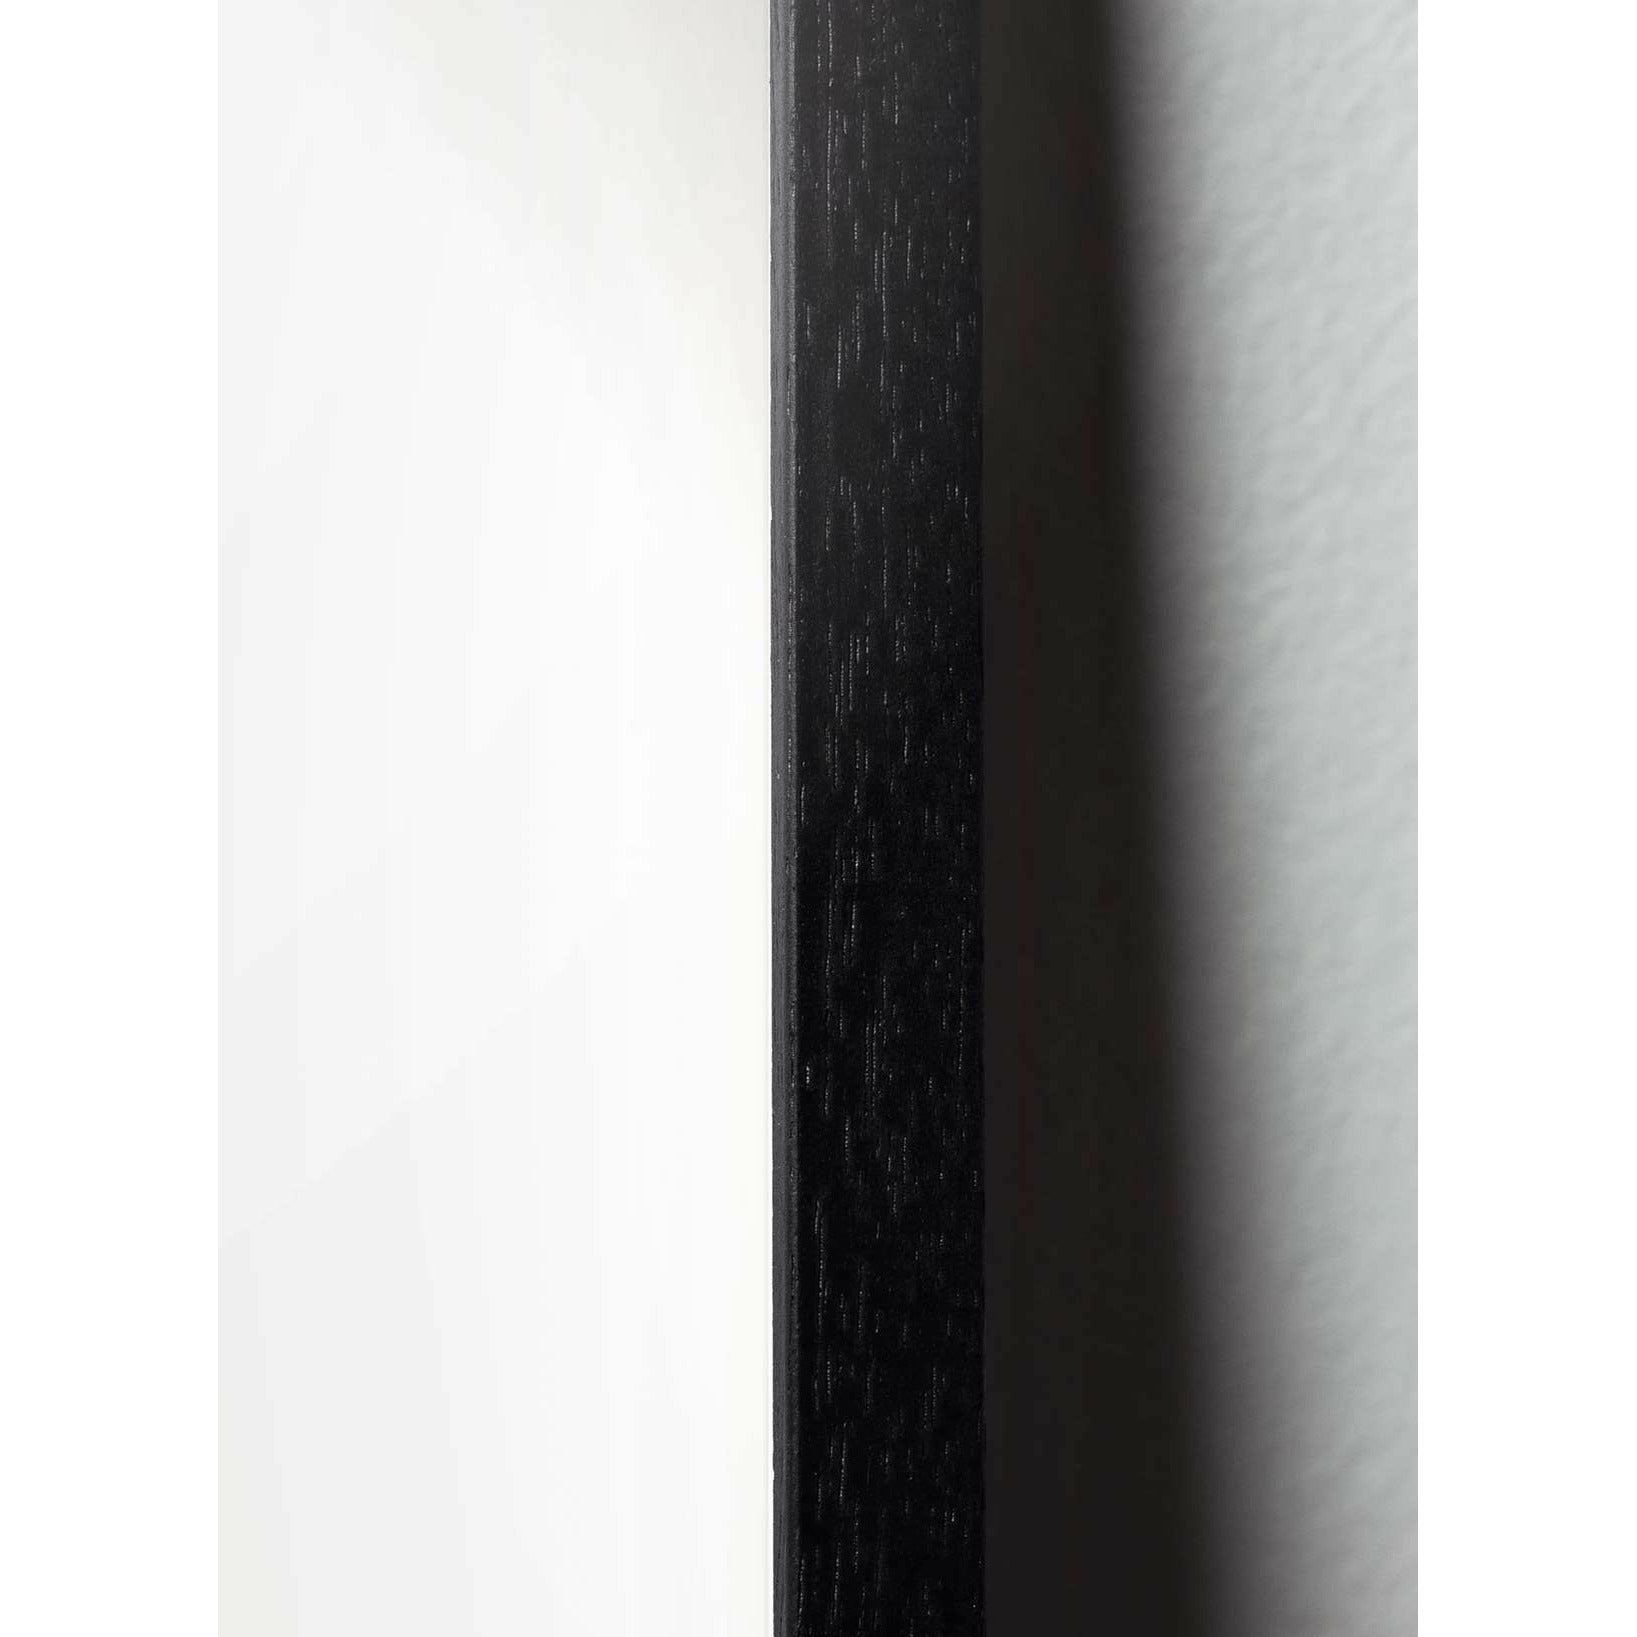 Brainchild Snowdrop Line Poster, Rahmen aus schwarz lackiertem Holz 30x40 cm, weißer Hintergrund